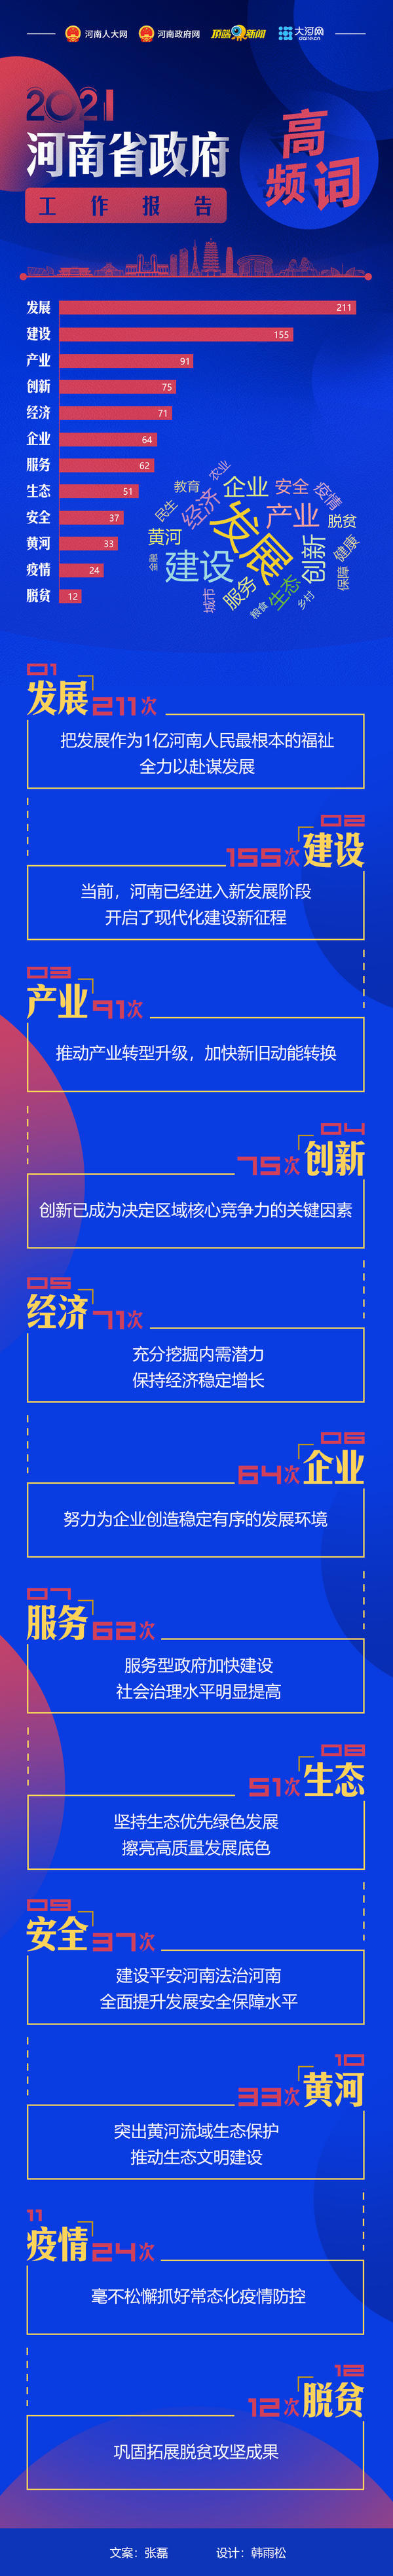 2021年河南省政府工作报告高频词出炉 看哪些词位居前列